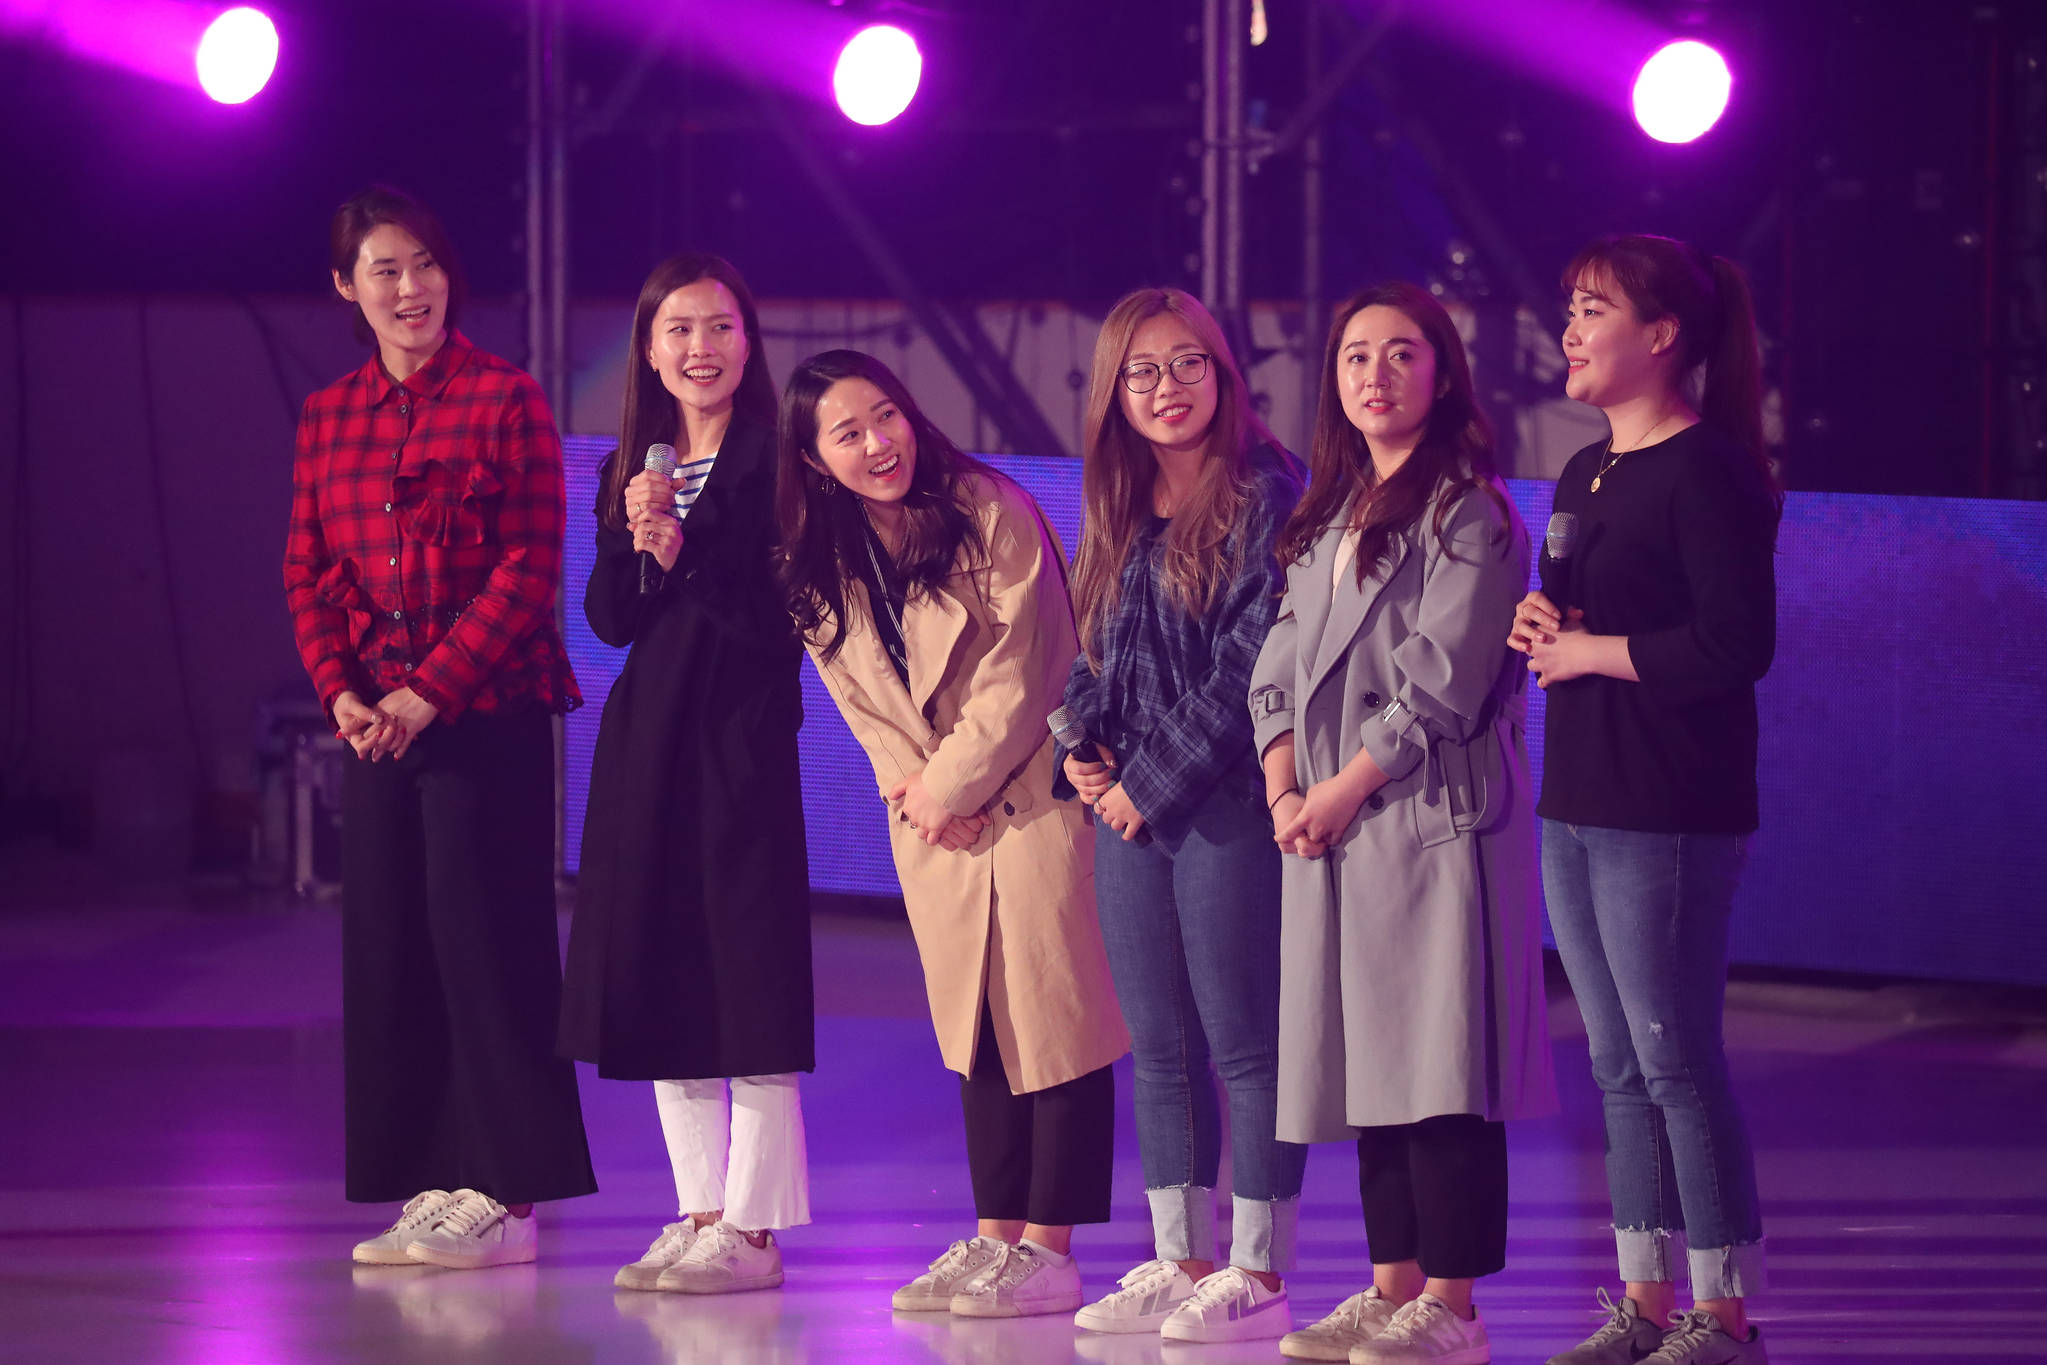 '인공지능 LG ThinQ 아이스 판타지아 2018'에 특별 출연한 여자 컬링 대표 팀이 차준환 선수의 이름으로 삼행시를 짓고 있다. 우상조 기자